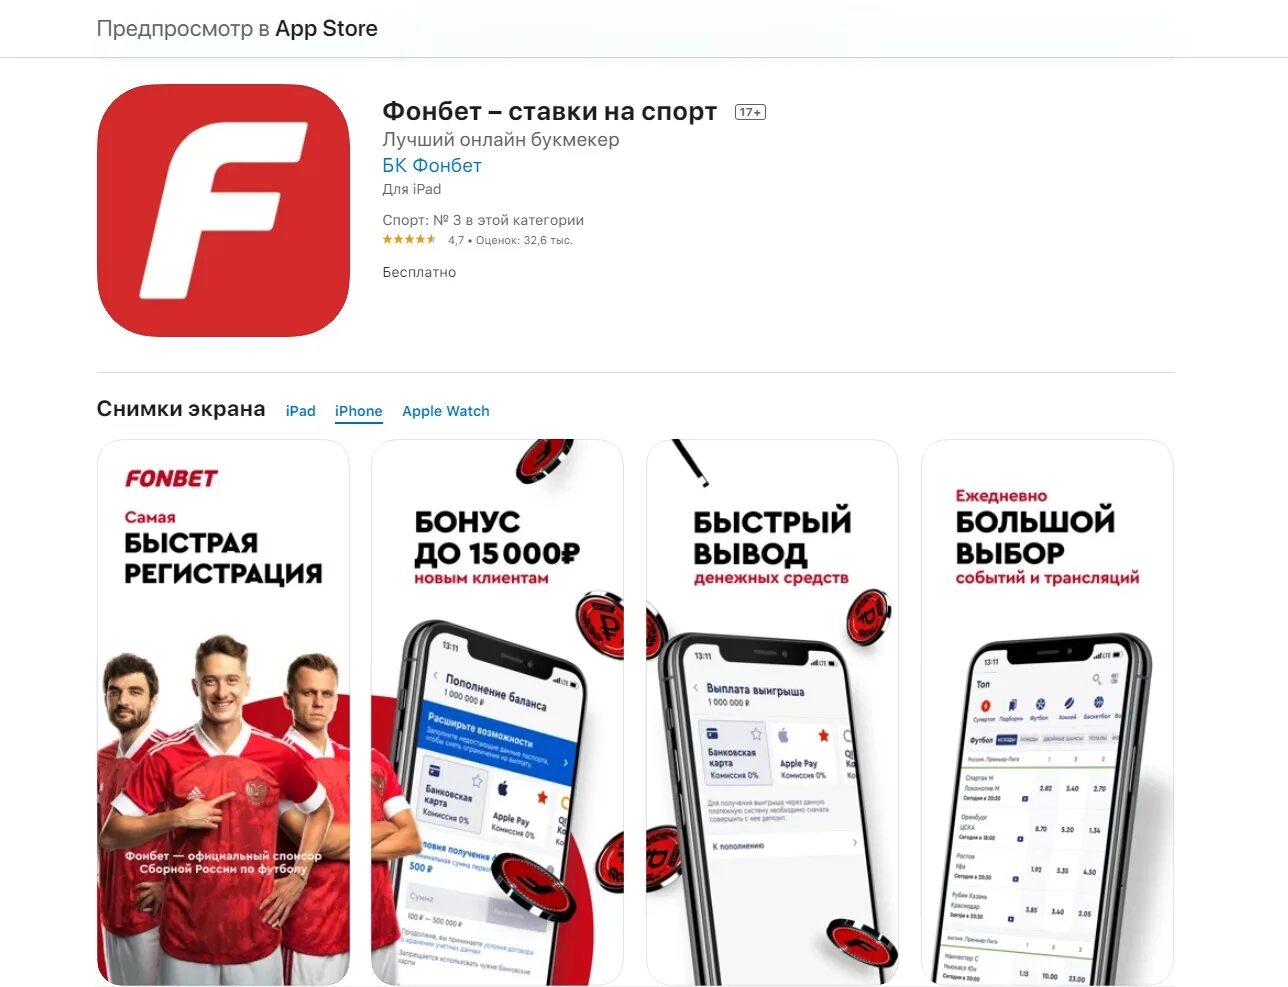 Фонбет красное приложение. Фонбет приложение. Фонбет логотип приложения. Приложение Фонбет на айфон. Фонбет Спонсор.